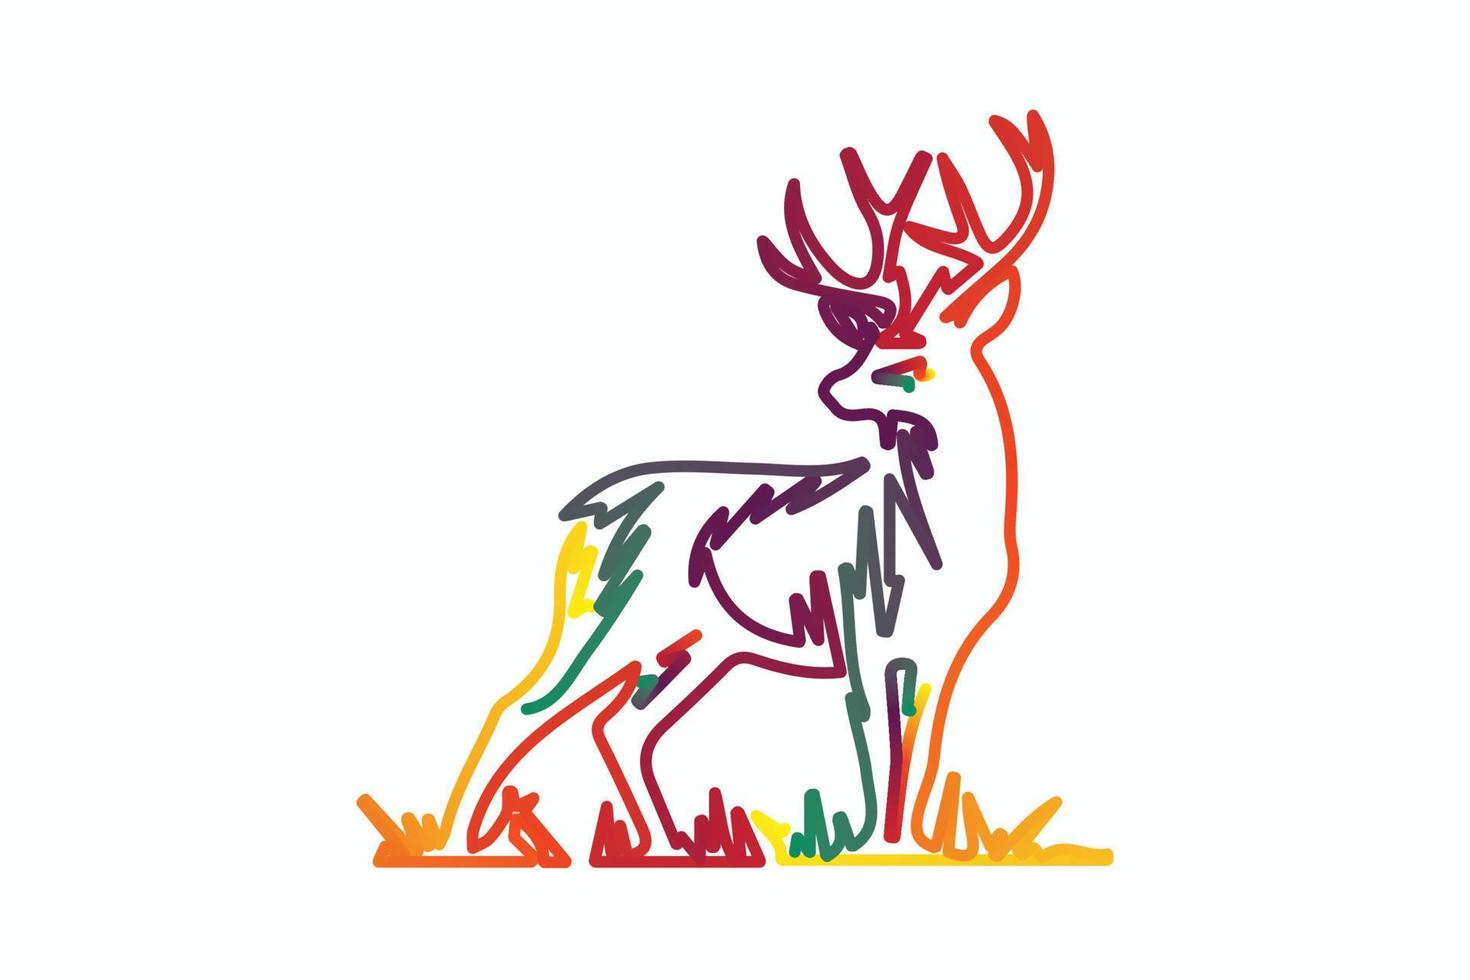 Deer head creative design logo vector. Deer illustration vector